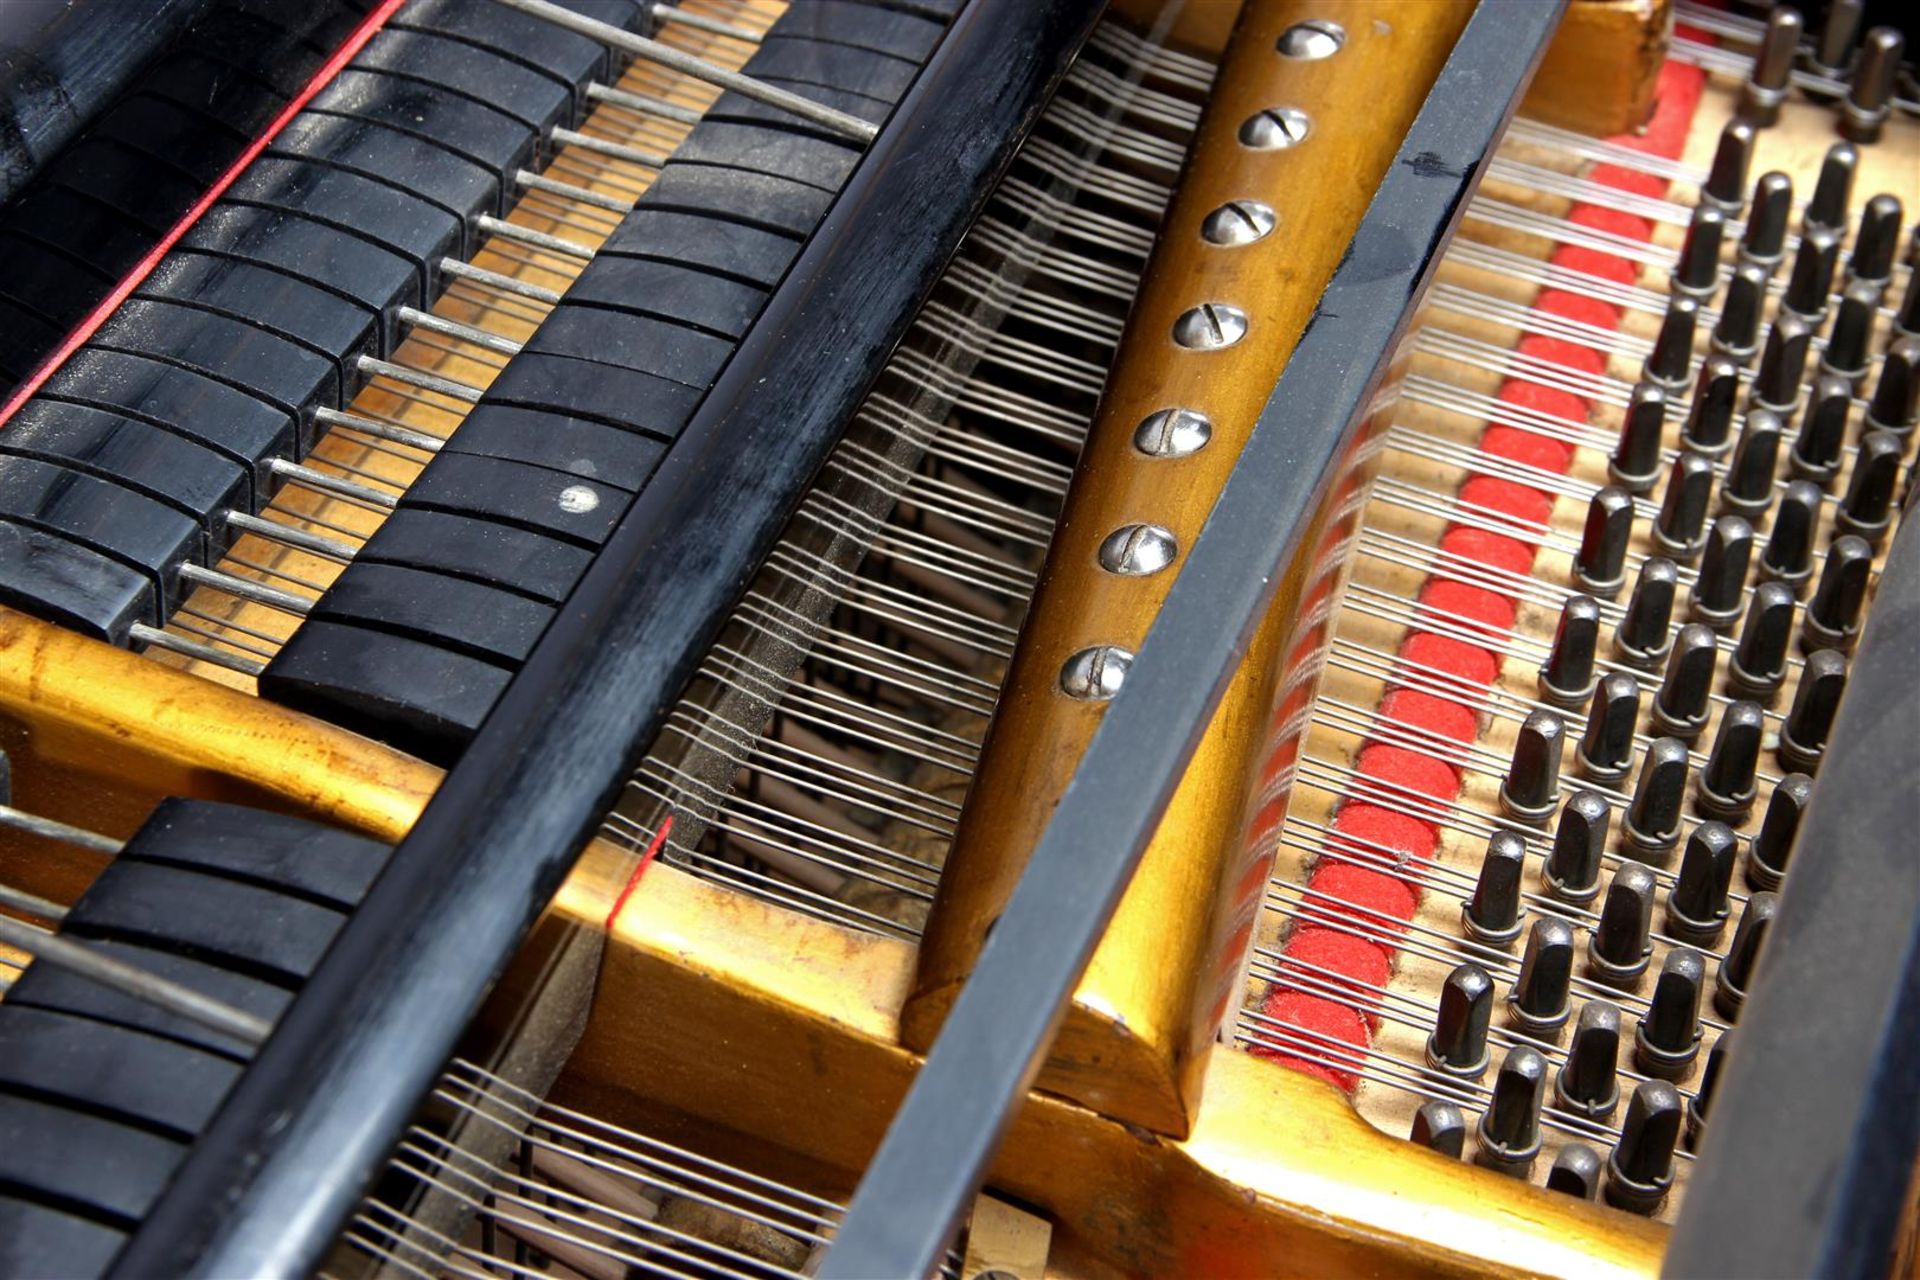 Bösendorfer grand piano - Image 7 of 13